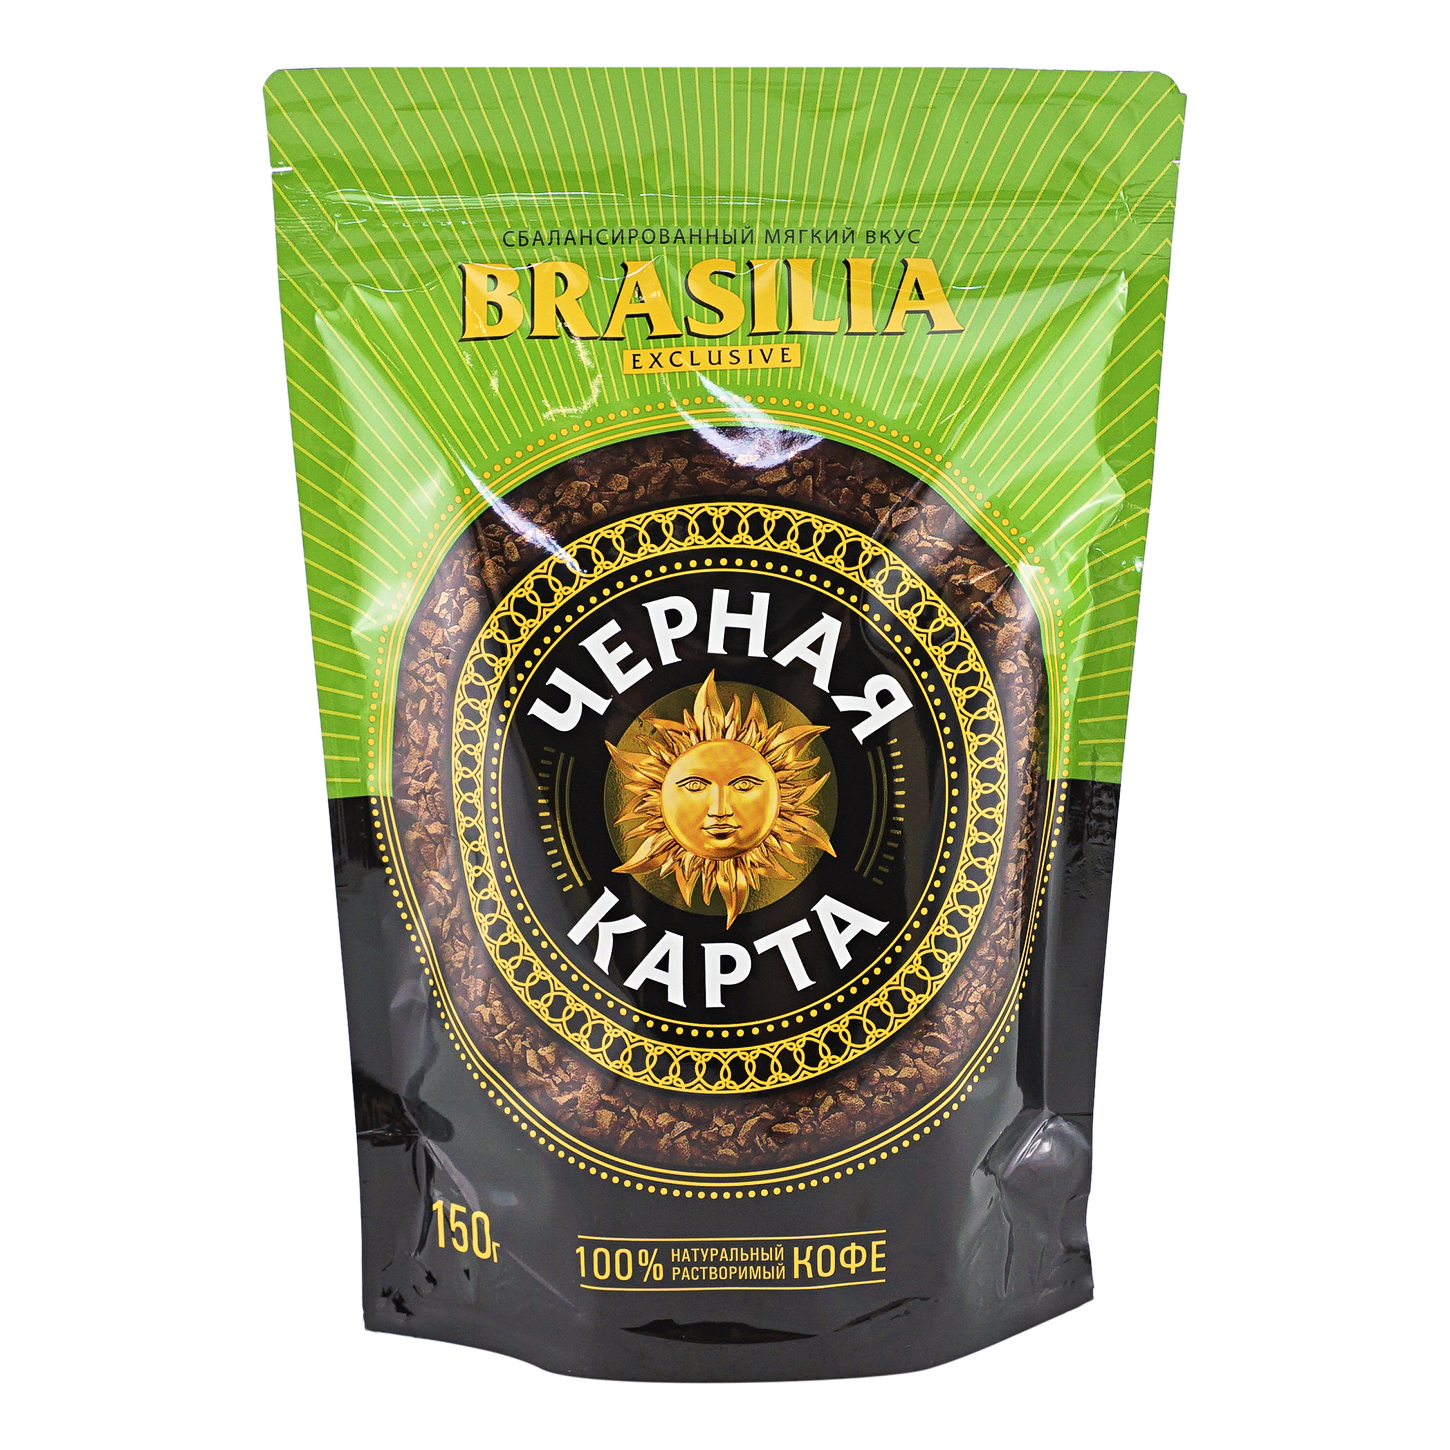 Кофе растворимый Черная карта exclusive Brasilia 150 г